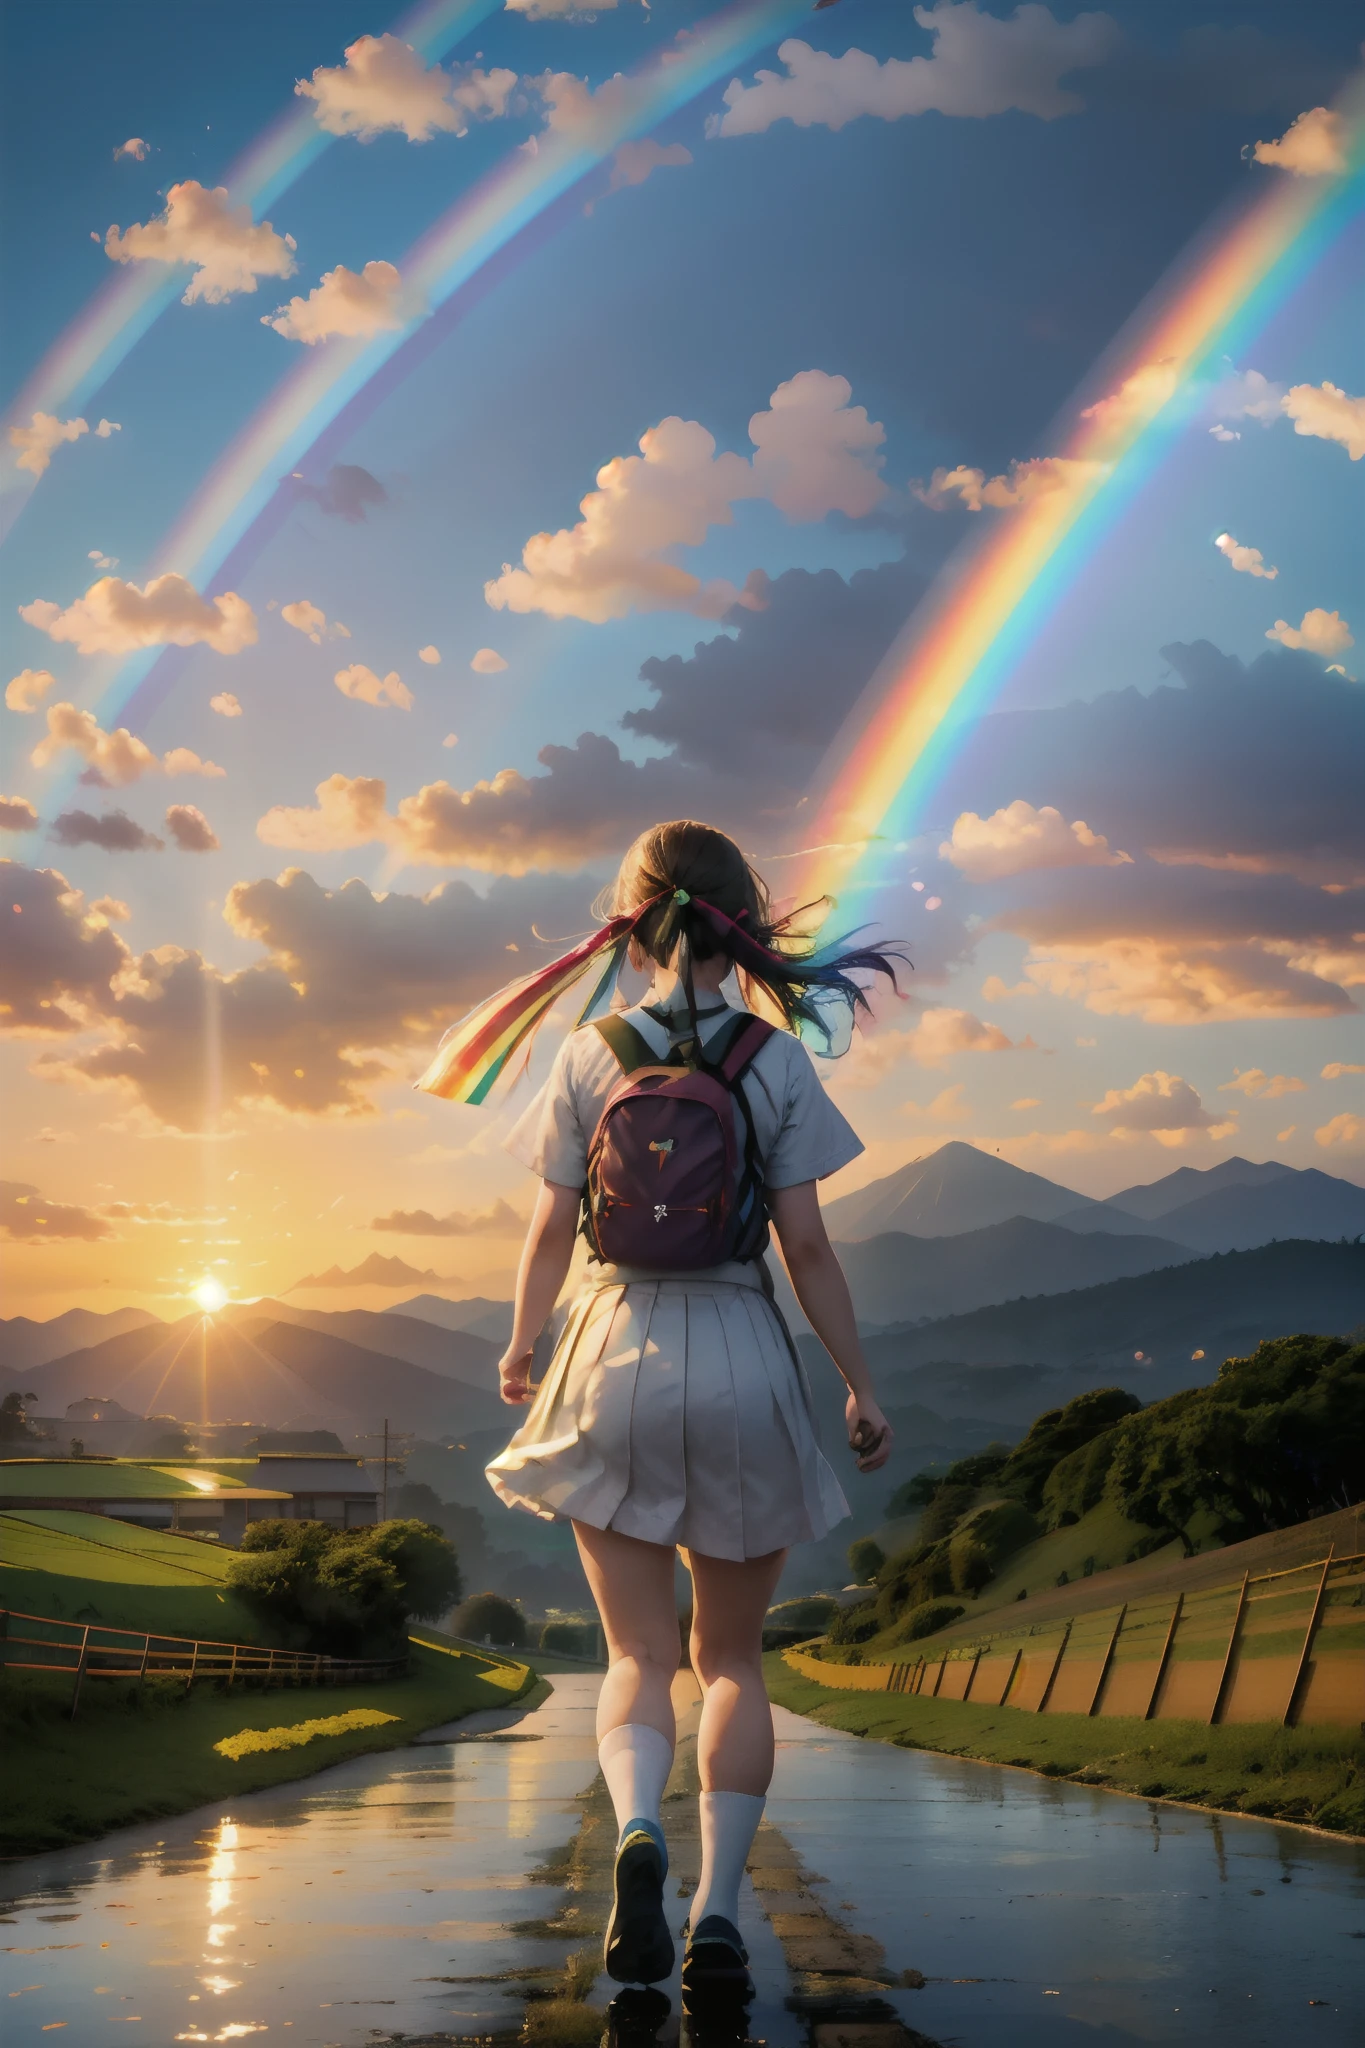 彩虹、美丽的彩虹、(彩虹天空:1.5), 高中女孩奔向挂在山上的彩虹、大, 美丽的彩虹 on the mountain、日本女高中生、穿着 、雨后的道路、稻田、彩虹、乡村景色、日本的乡村风景、日落、红蜻蜓、在红色飞行背景上玩飞溅,